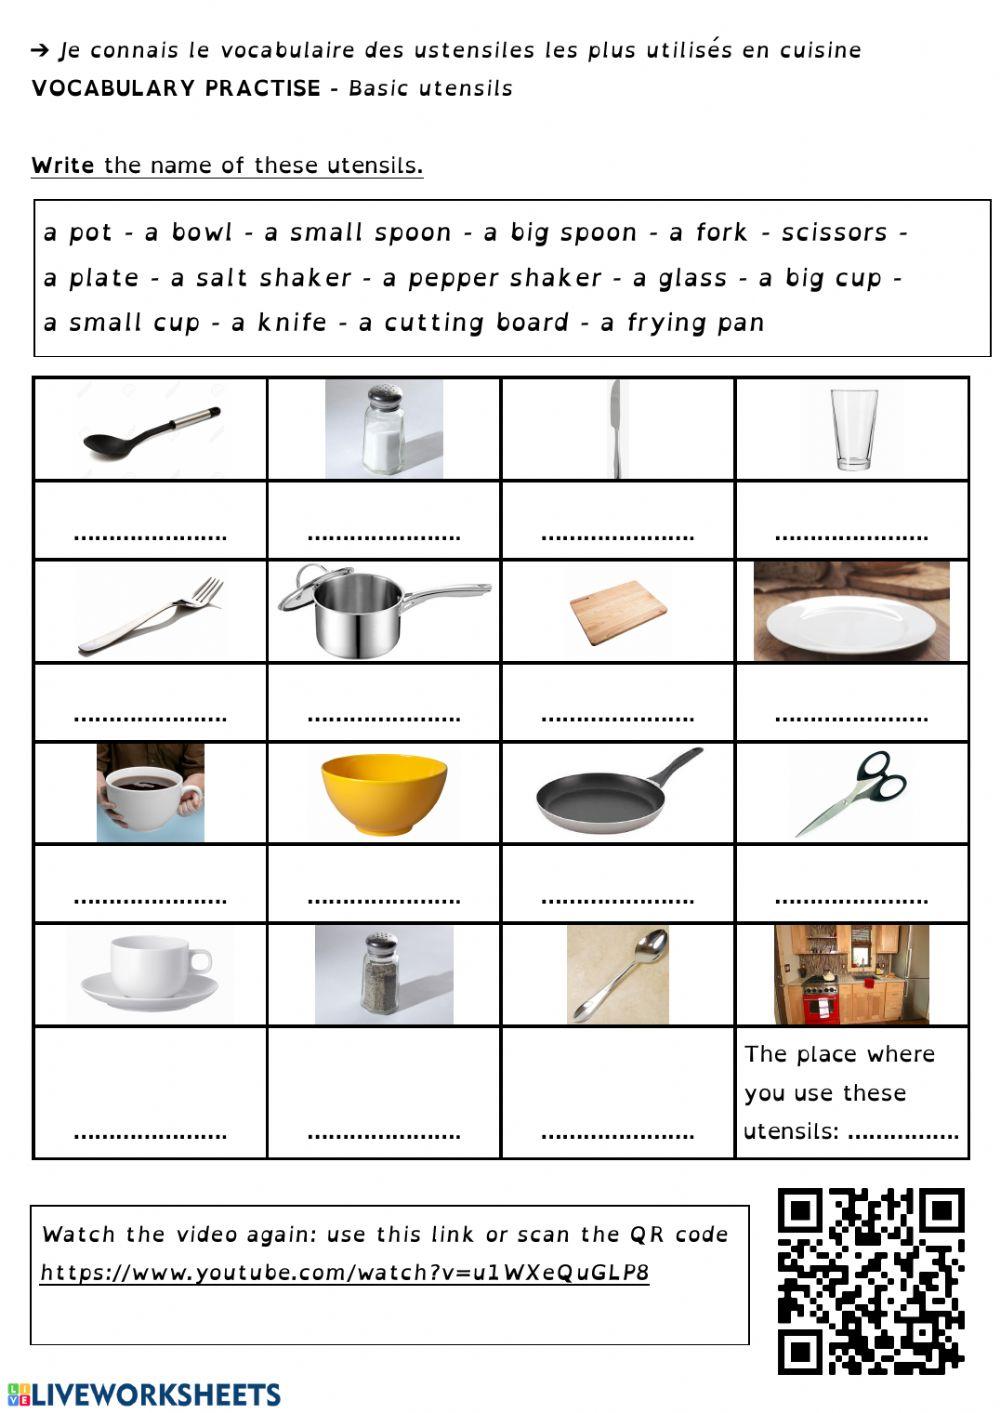 Basic utensils